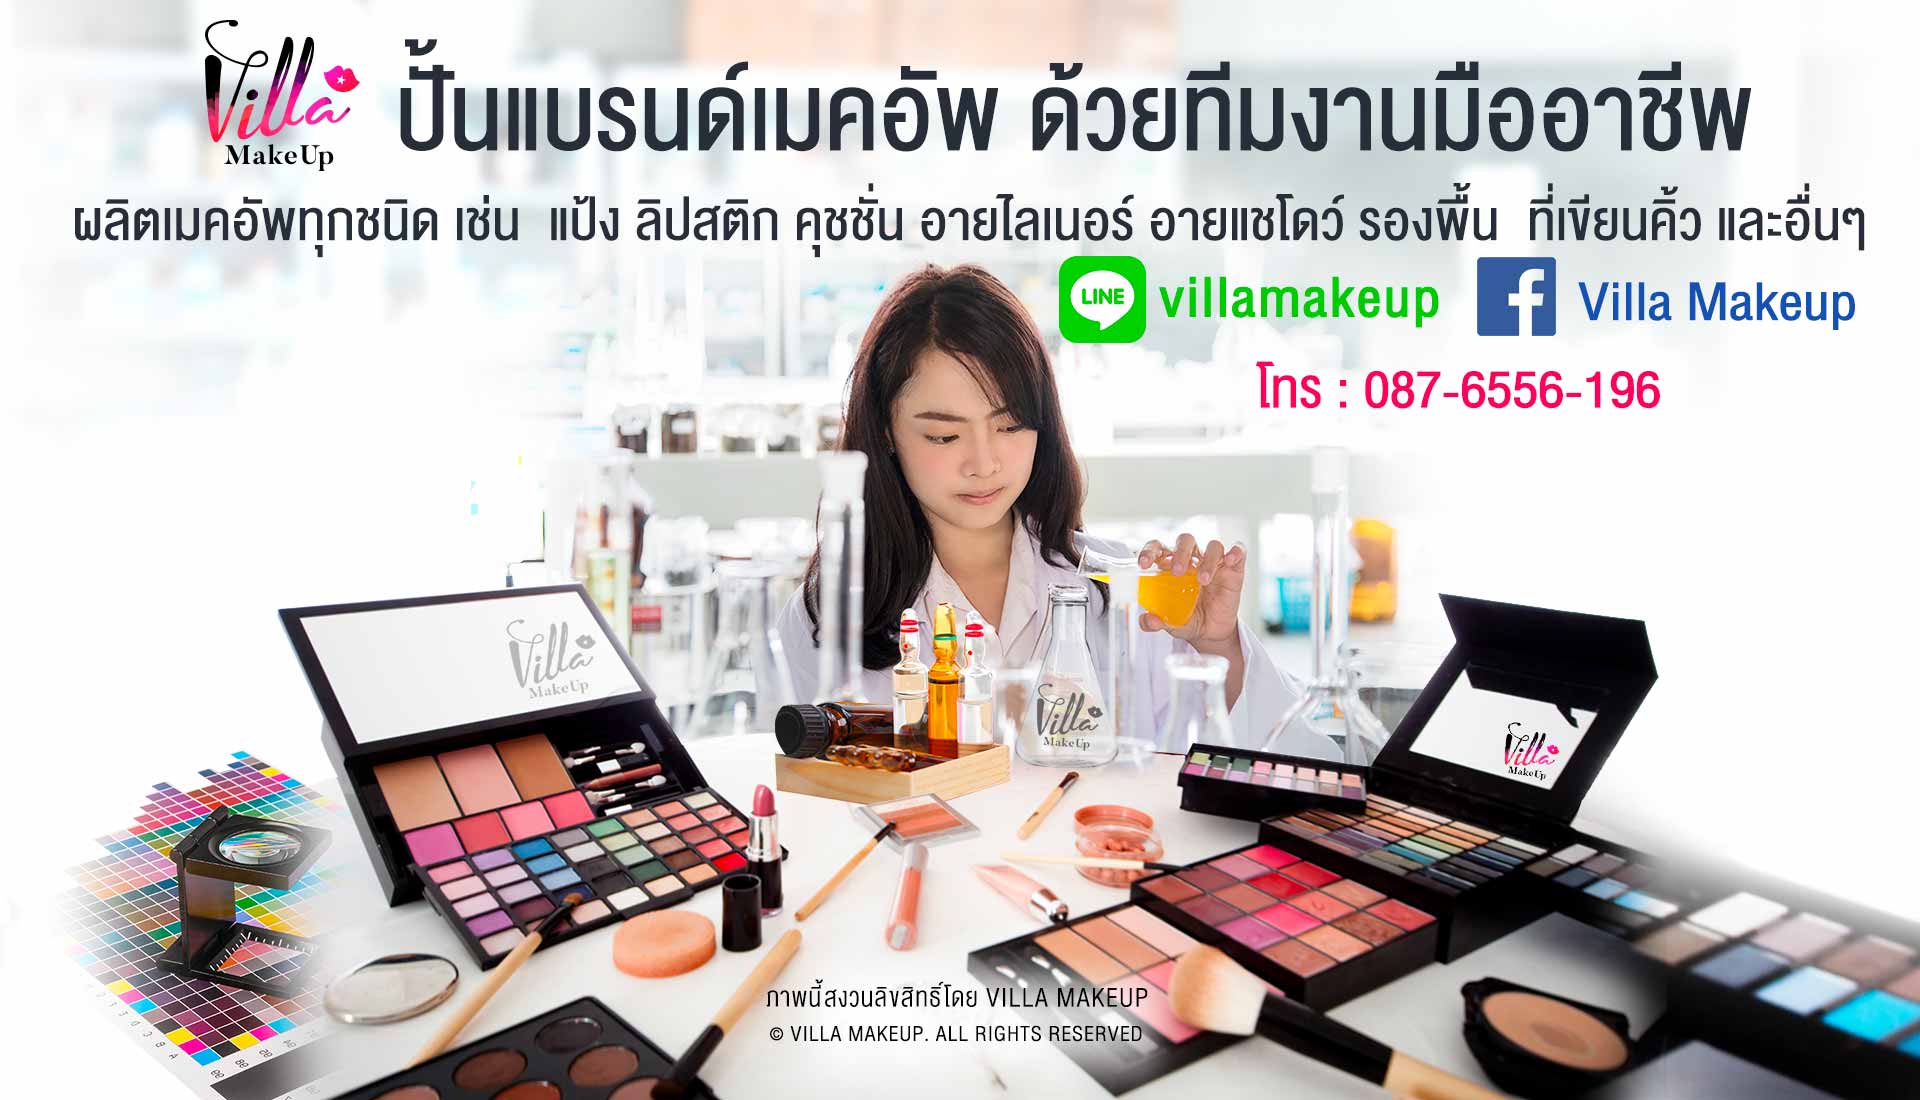 Villa Makeup รับผลิตเมคอัพจากเกาหลี นำเข้าตรง 100% แบบ One Stop SERVICE Villa Makeup; รับผลิต MAKEUP; Cosmetics; เครื่องสำอาง; เกรด Premium จากเกาหลี; KOREA; OEM/ODM Manufacturer; พร้อมนำเข้าและทำการตลาดแบบ; One Stop Service; บริการออกแบบสินค้าสวยระดับ Counter Brand; ลิปสติก; อายไลน์เนอร์; คอสเมติก; เครื่องสำอาง; เมคอัพ; คู่ชั่น Cushion; แป้งฝุ่น แป้งพัฟ; ดินเขียนคิ้ว มาสคาร่า Mascara; Eyeliner; Eye Brow; รองพื้น; พาเลตต์; หน้า; คอนซีลเลอร์; ไพรเมอร์; บรอนเซอร์; รองพื้น; บลัช; บีบีและคอเรคเตอร์ครีม; ไฮไลท์; แป้ง; คอนทัวร์; ตา; อายไลเนอร์; เมคอัพรีมูฟเวอร์; อายแชโดว์; คิ้ว; อุปกรณ์แต่งตา; ยาทาเล็บ; อายไพรเมอร์และเบส; ขนตาปลอม; มาสคาร่า; ปาก; ลิปเพิ่มริมฝีปากอวบอิ่ม; ลิปสติก; ลิปบาล์มและลิปบำรุงริมฝีปากลิปพาเลท & ลิปเซ็ท; ลิปกลอส; ดินสอเขียนขอบปาก; เมคอัพพาเลทและเมคอัพเซ็ท; พาเลทเครื่องสำอาง; ลิปดินสอ; แป้งคูชั่น; cushion powder grid; ผลิตเครื่องสำอาง; เครื่องสำอางค์